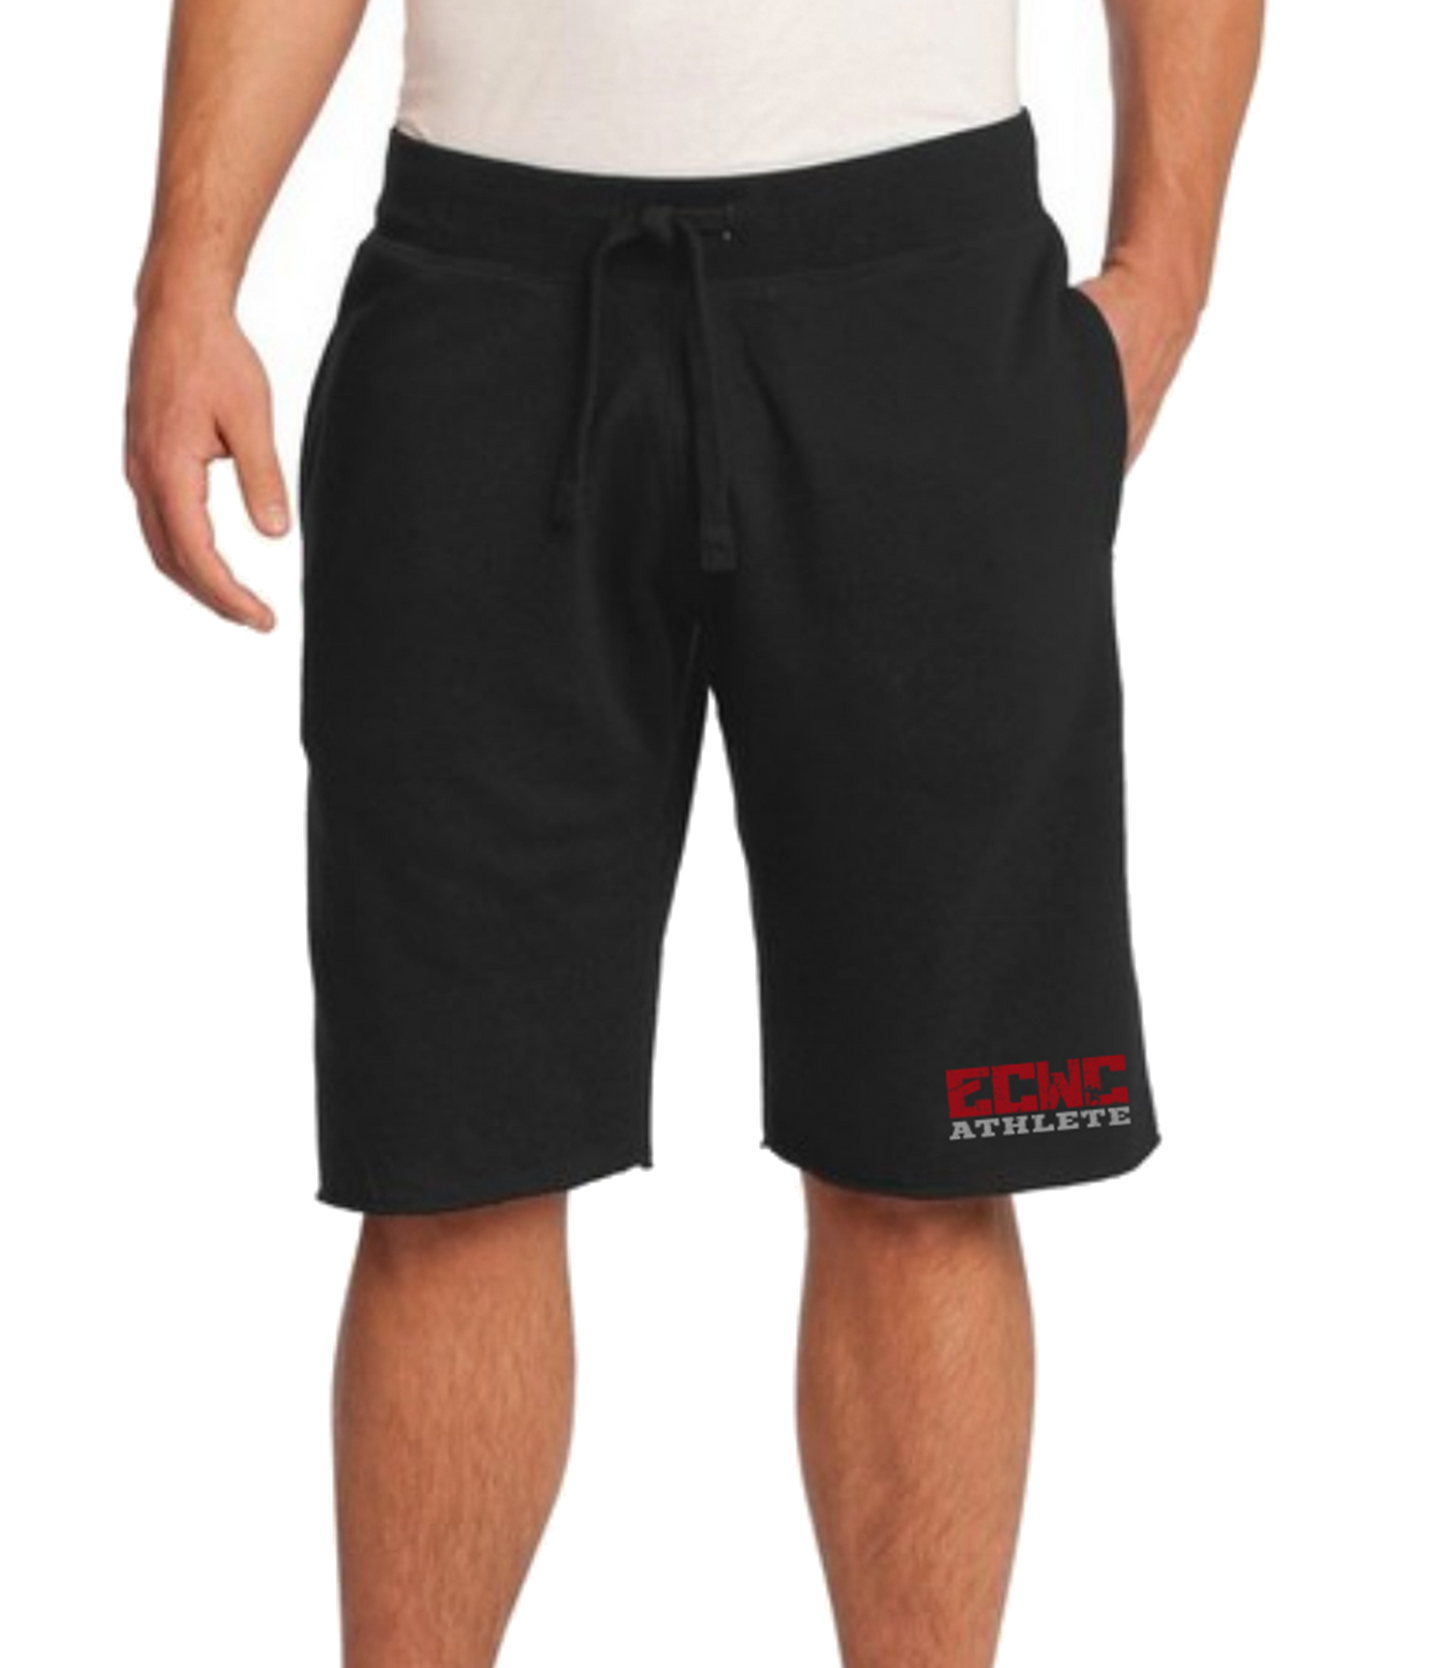 Men’s Core Fleece Short ECWC Athlete (Black)